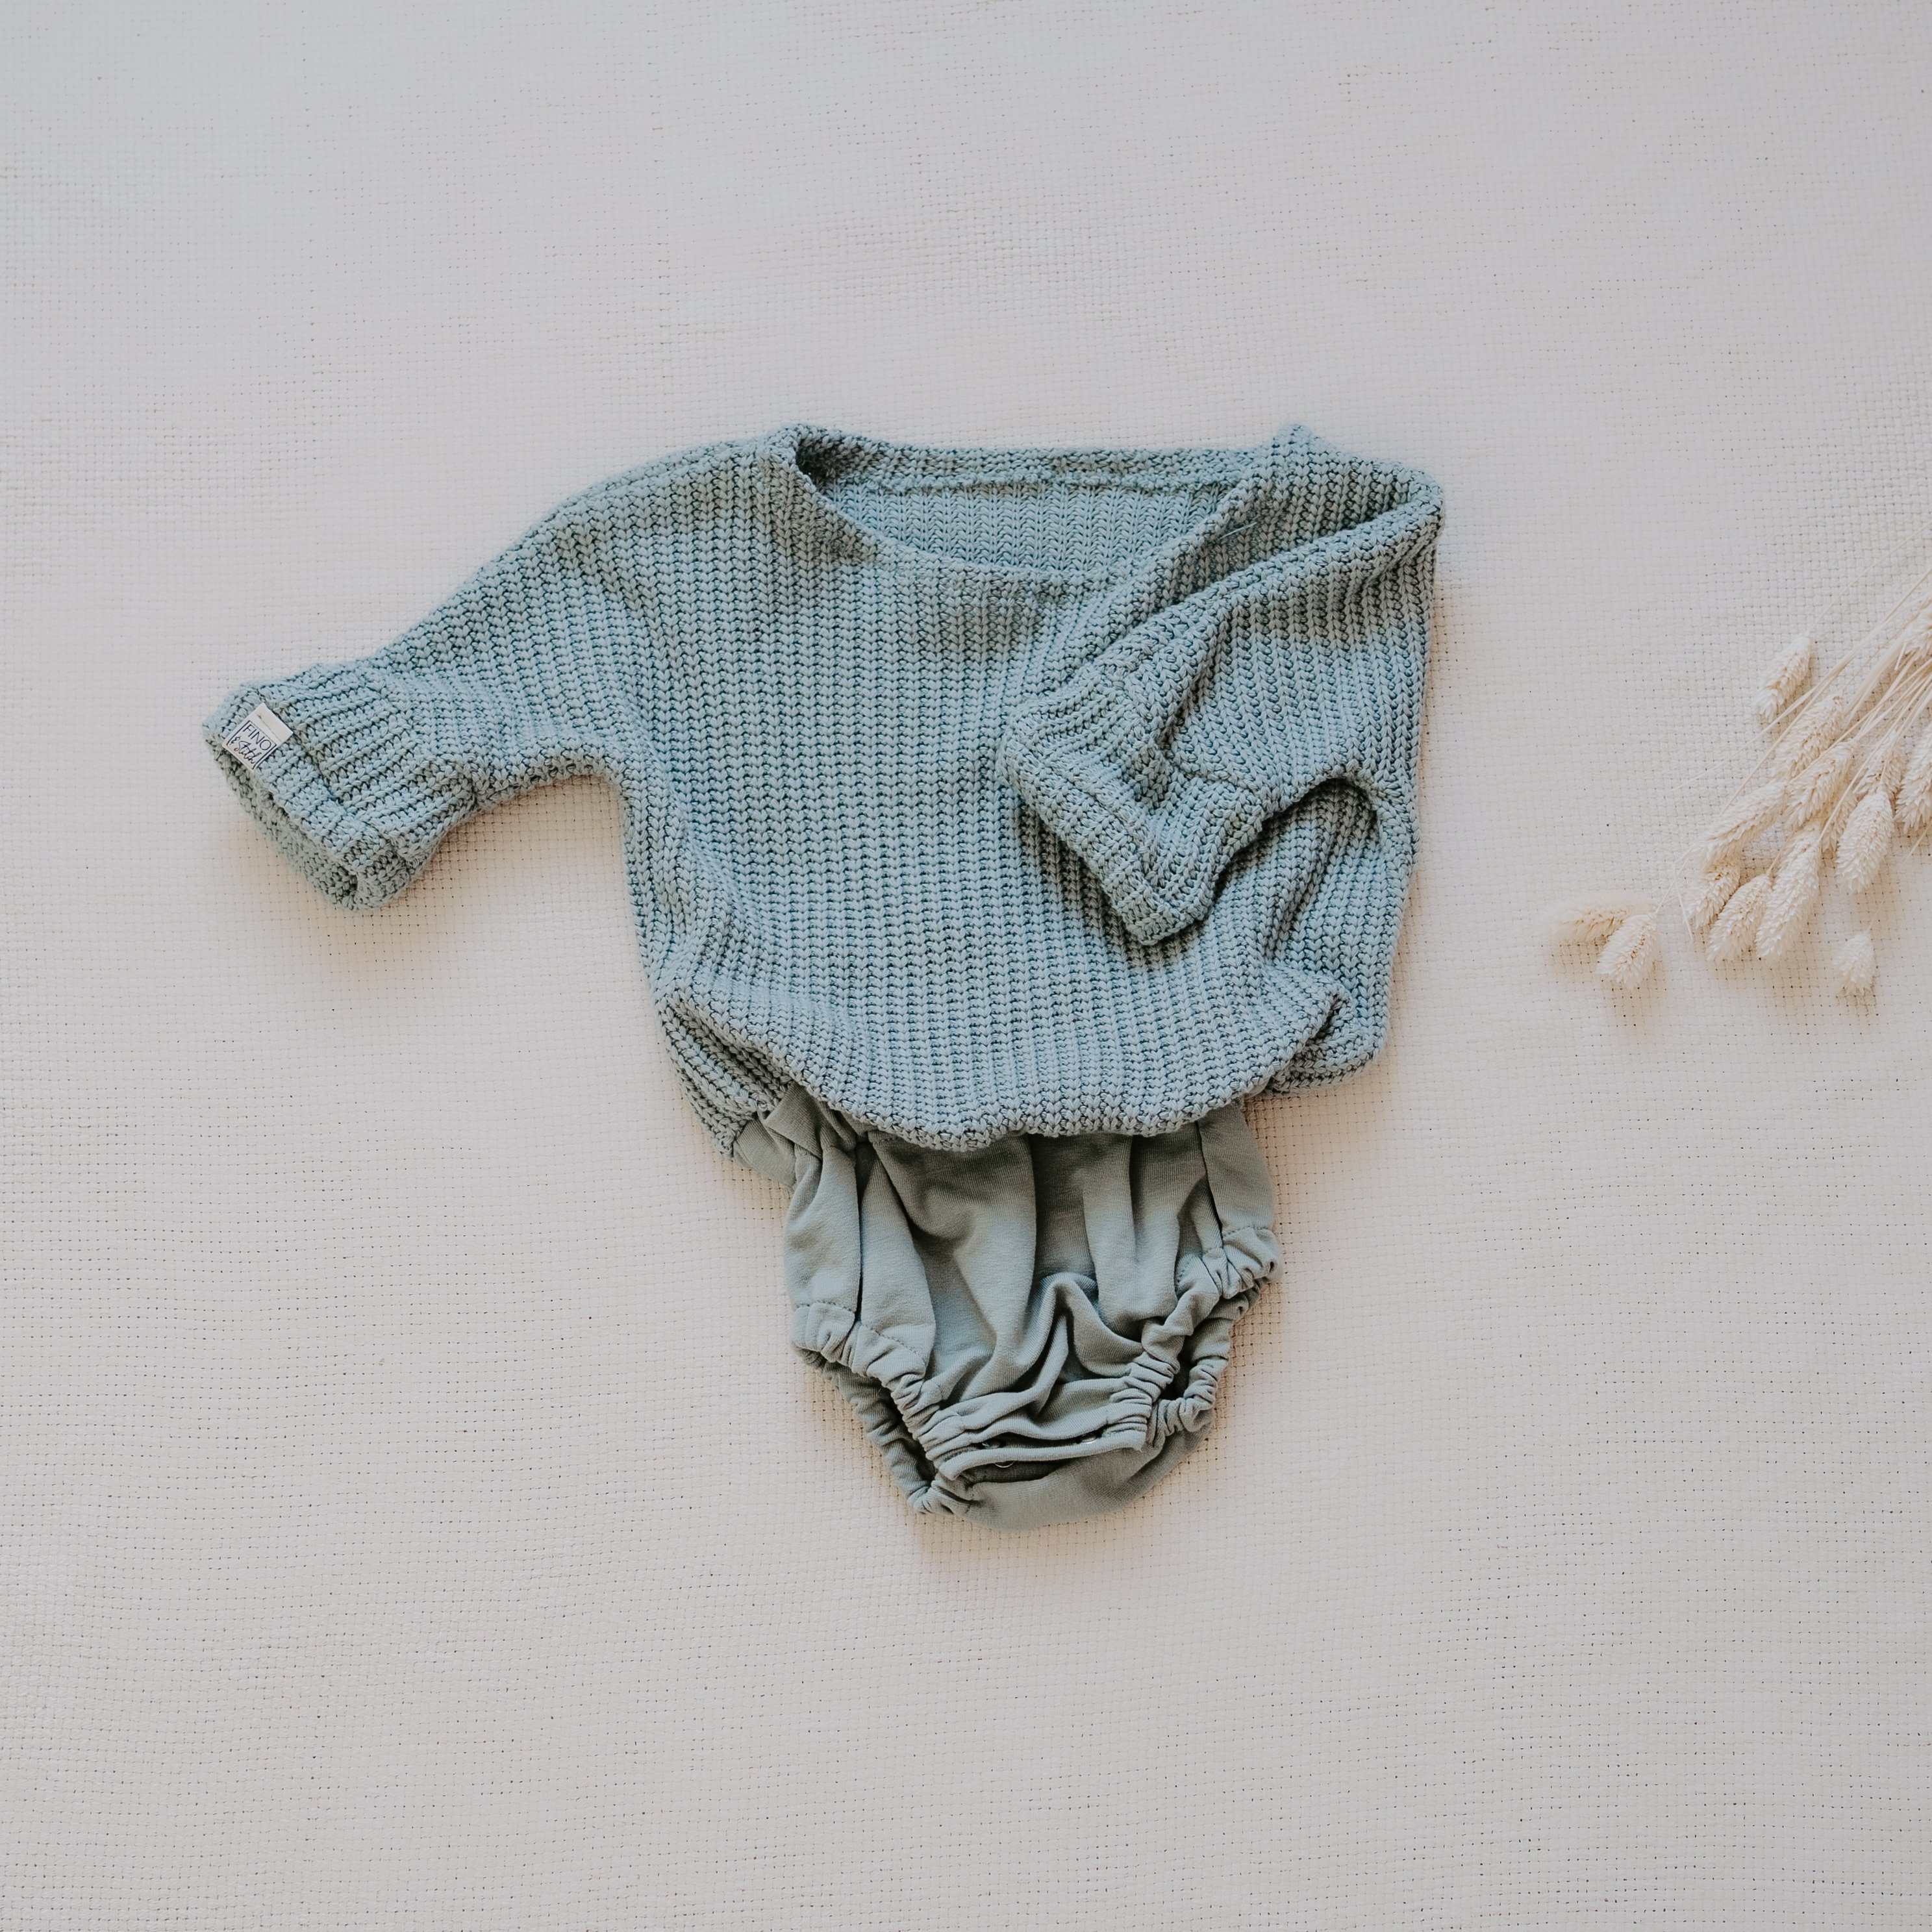 FINO & grün selbst - Baby&Kids DIY Stitch nähen Pulli - Nähset zum Kreativset Strick zugeschnitten